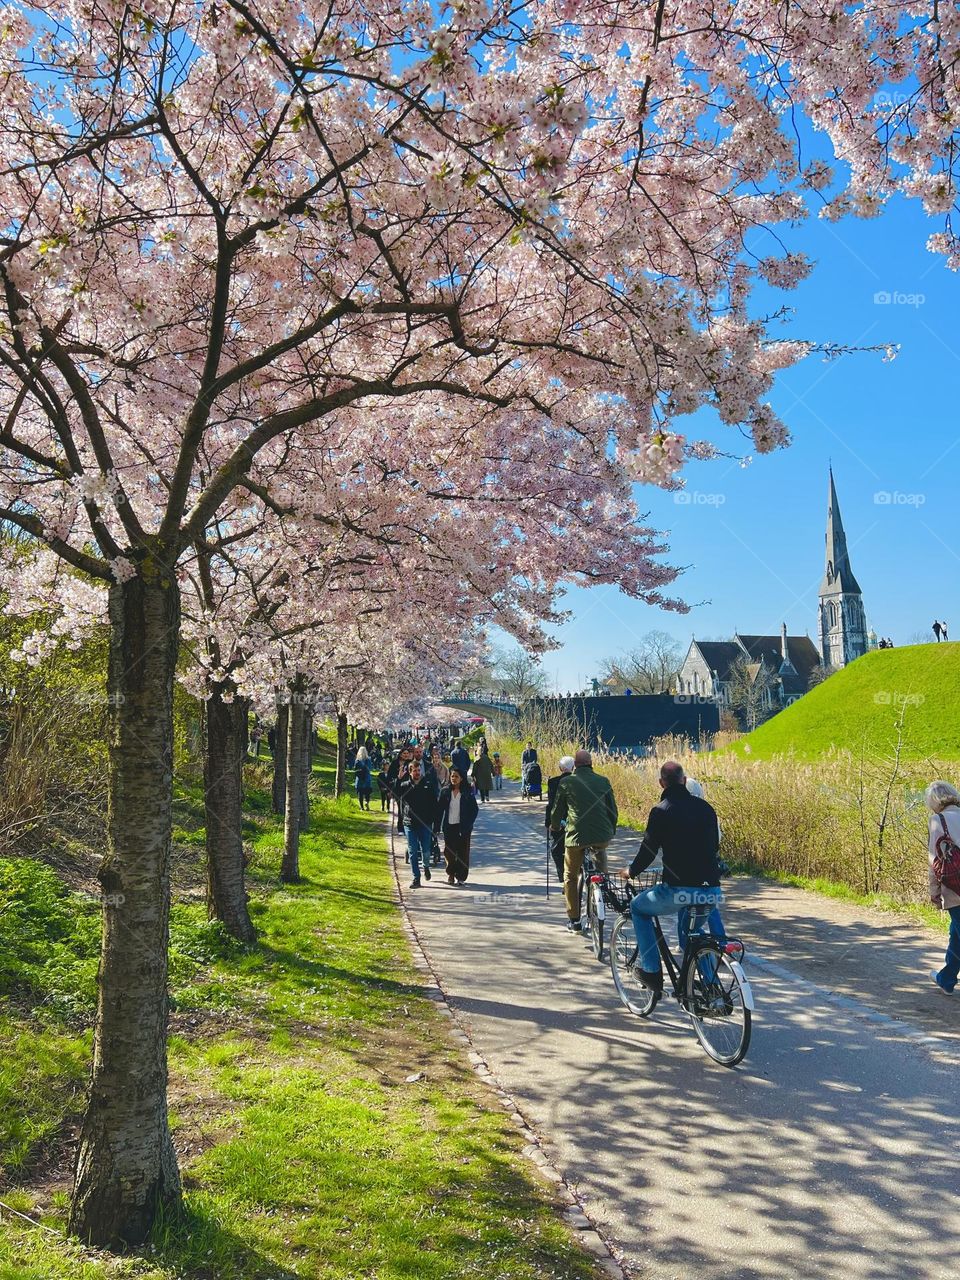 Under the Japanese cherry trees in Denmark 